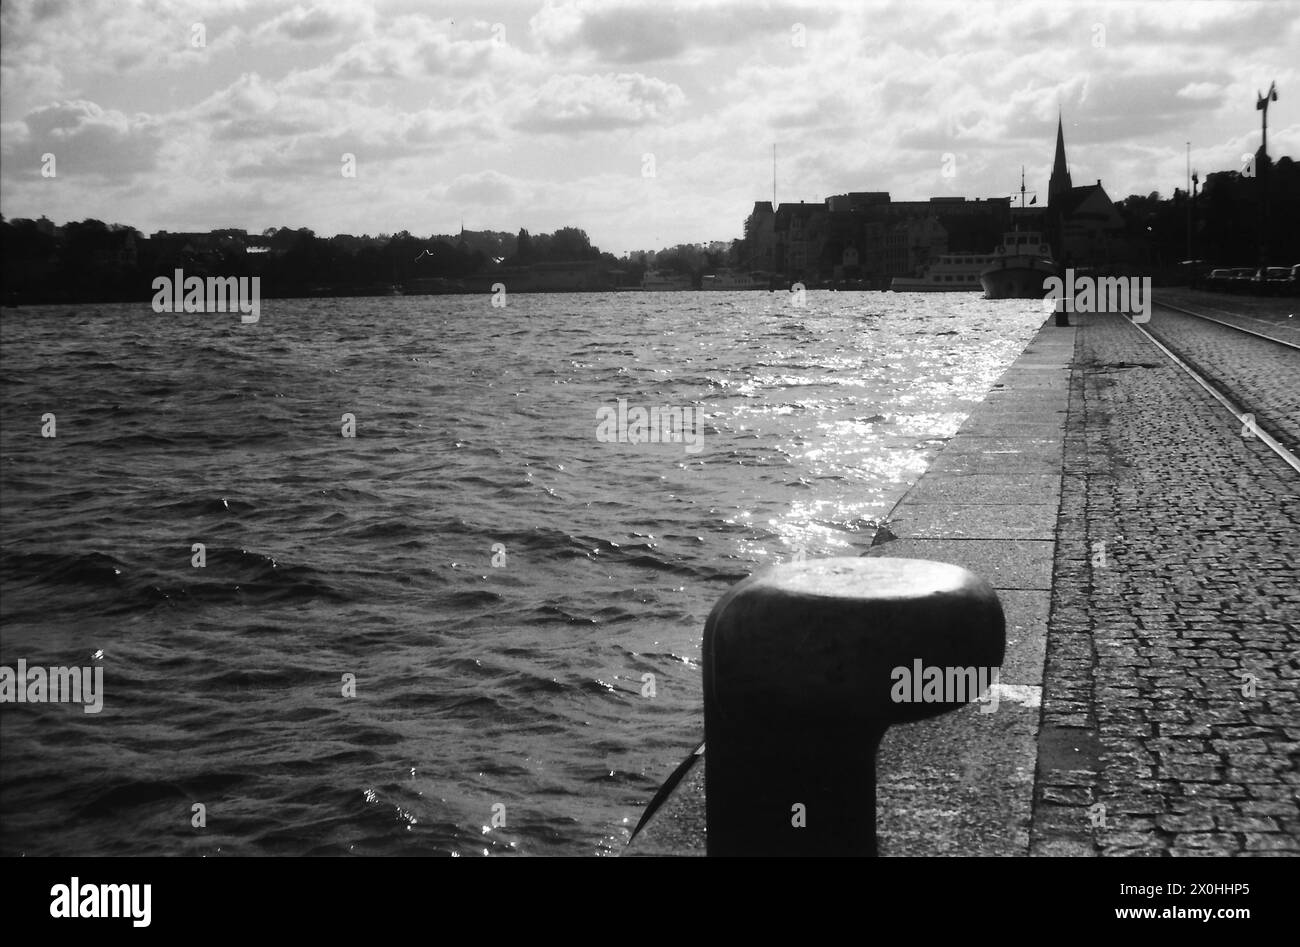 Es ist lange her, als ich die Ostseeküste in Flensburg bereiste. Ich glaube, ich habe hier ein Flensburger Hafenbecken fotografiert, denn die Kirche im Hintergrund könnte die Nikolaikirche sein. [Automatisierte Übersetzung] Stockfoto